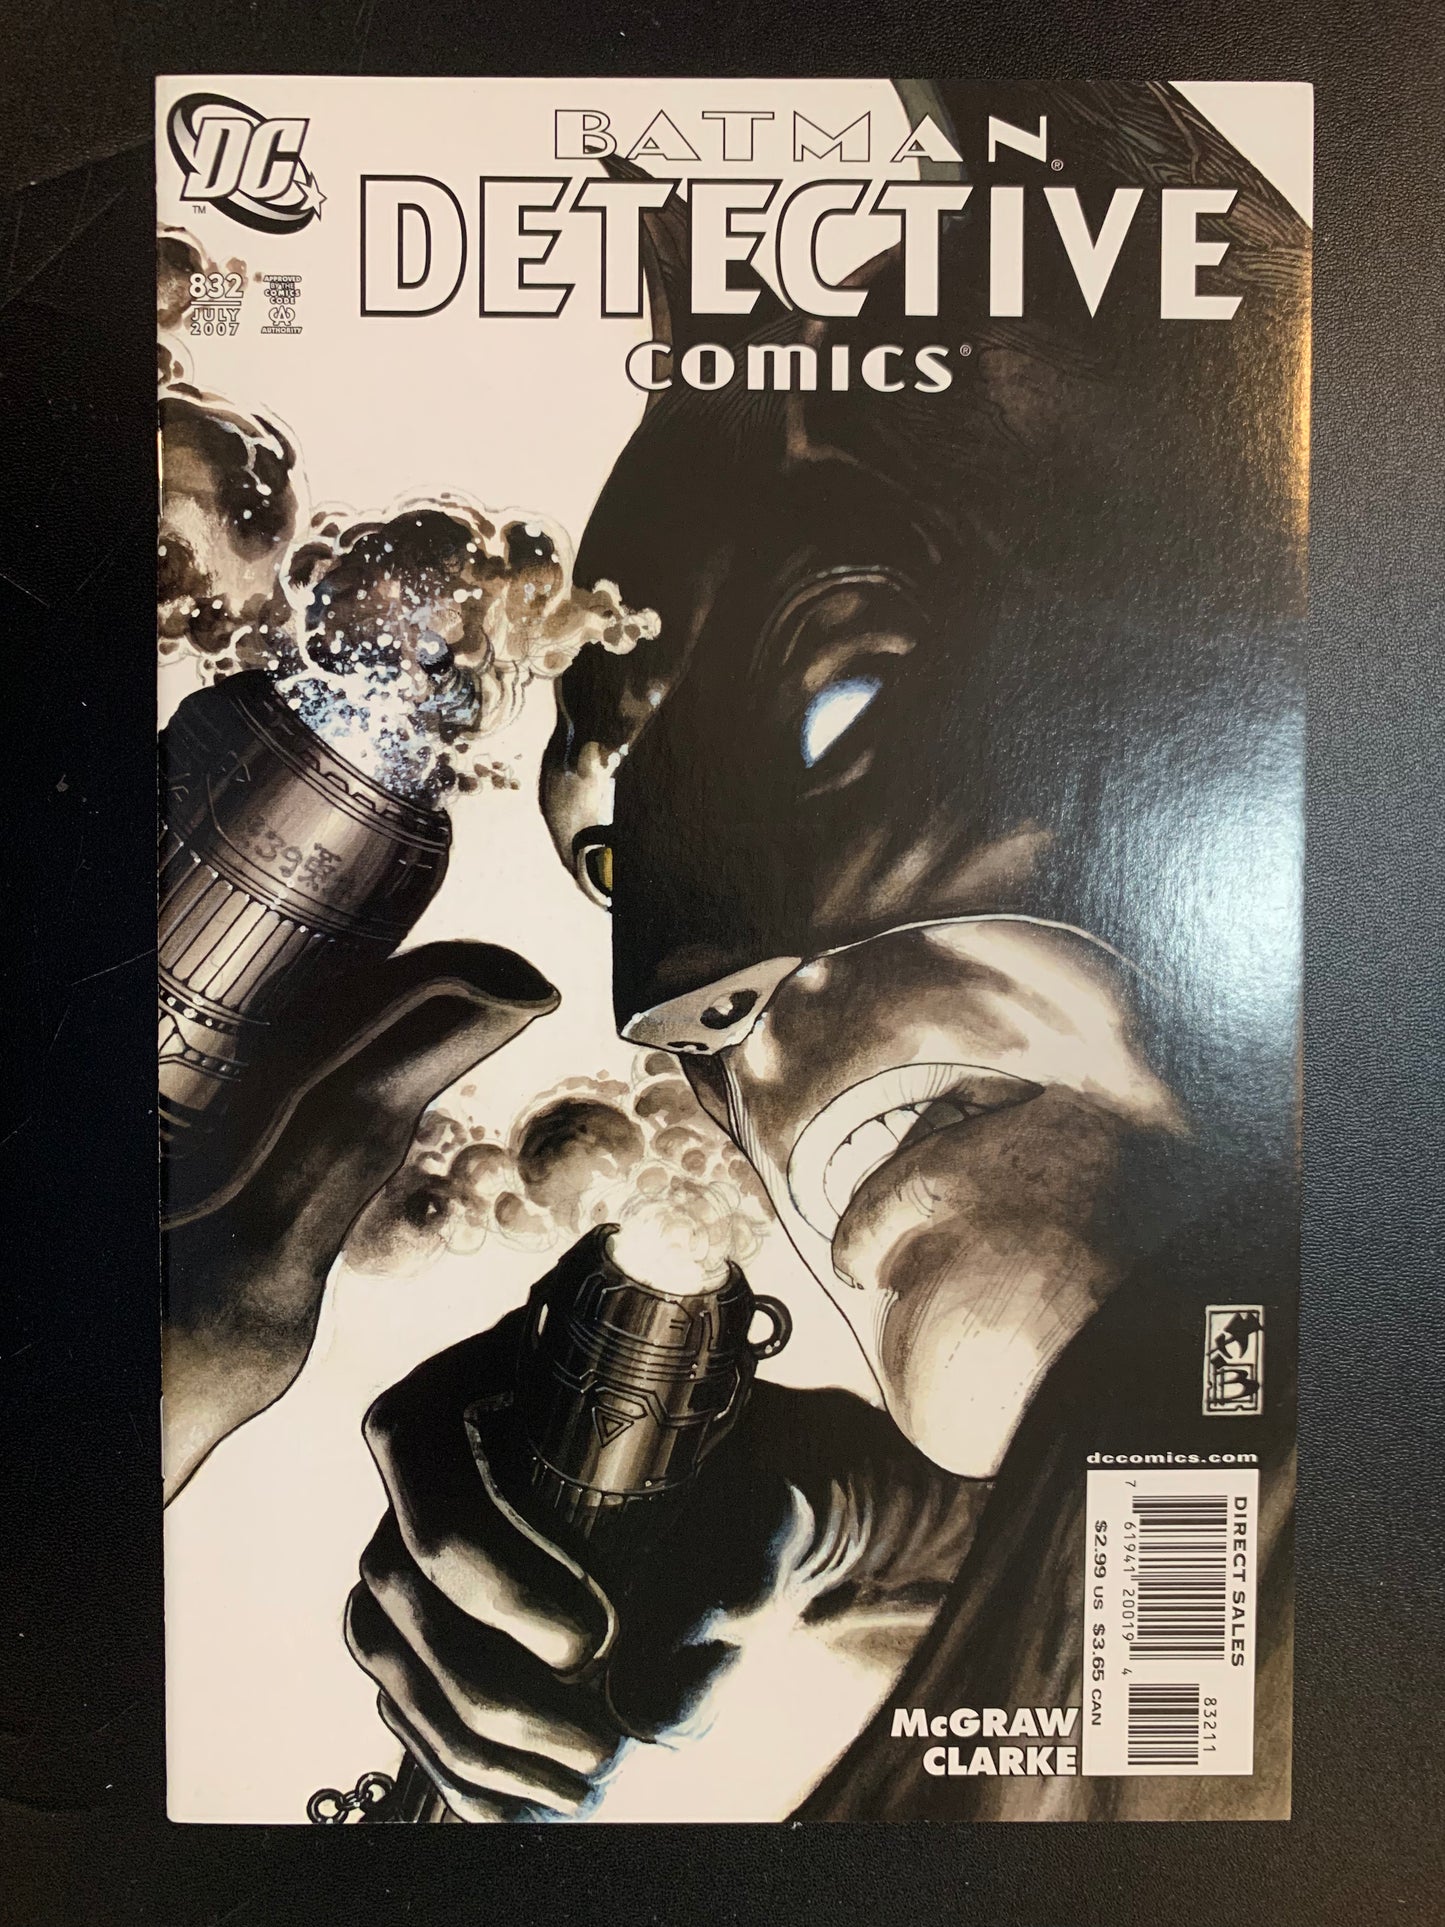 Detective Comics #832